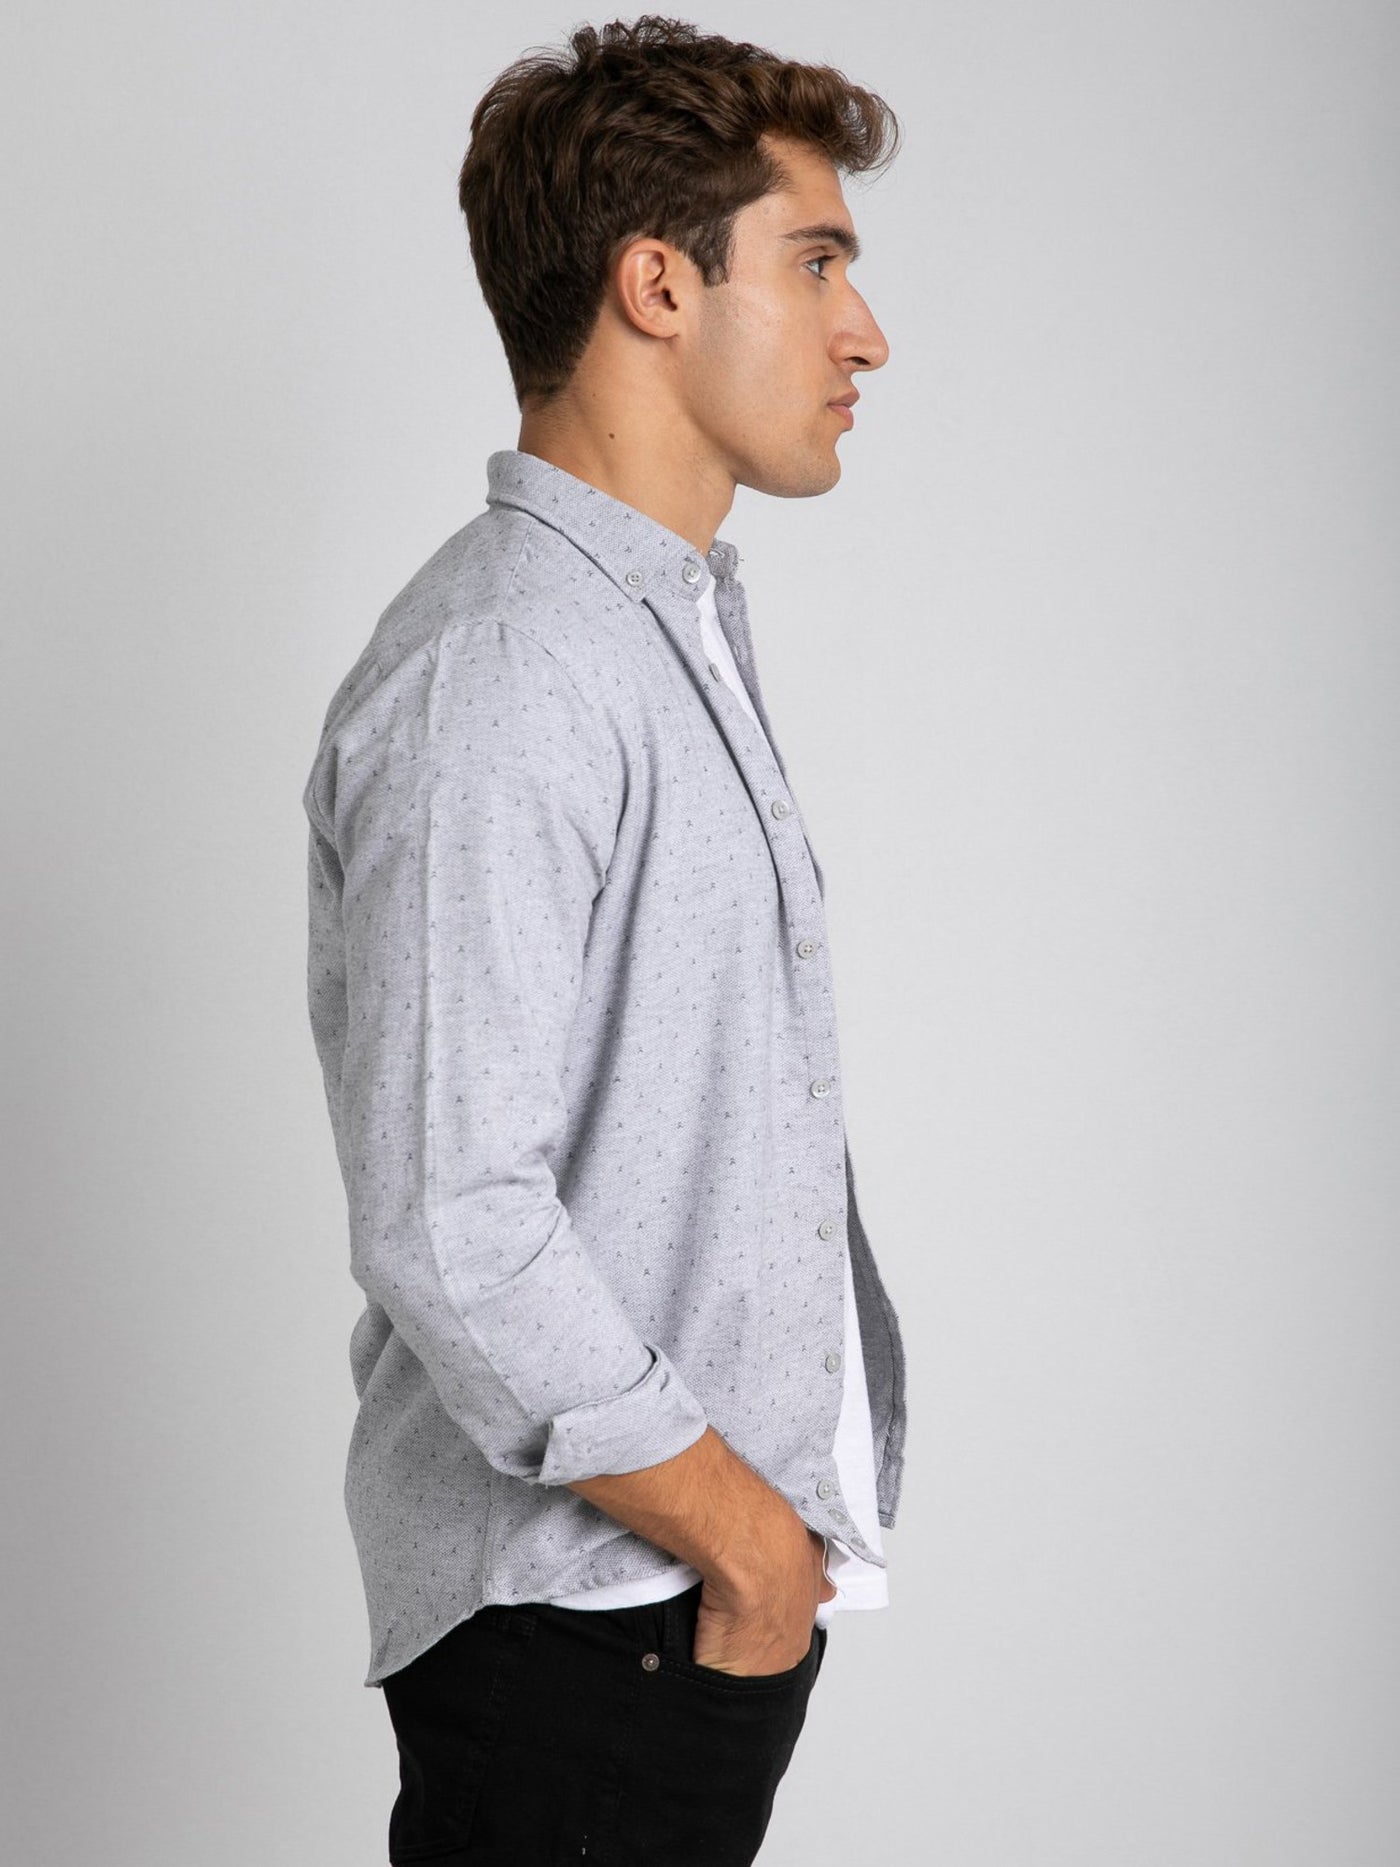 Premoda Mens Long Sleeve Printed Textured Shirt